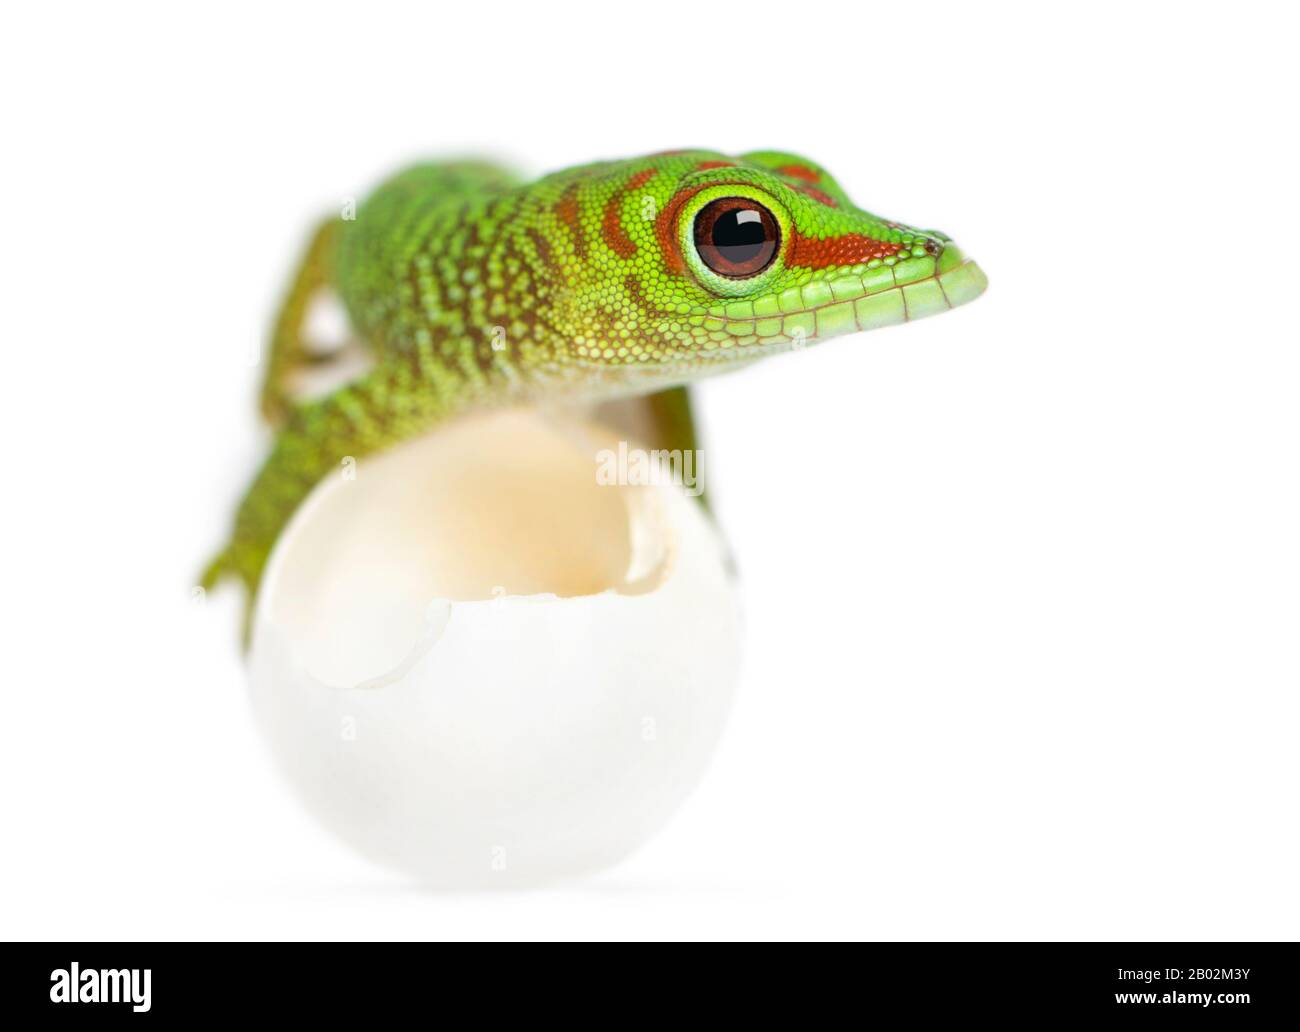 Vue de face d'un gecko de Madagascar géante allongé sur des œufs de qui il a éclos, Phelsuma madagascariensis grandis, isolé sur blanc Banque D'Images